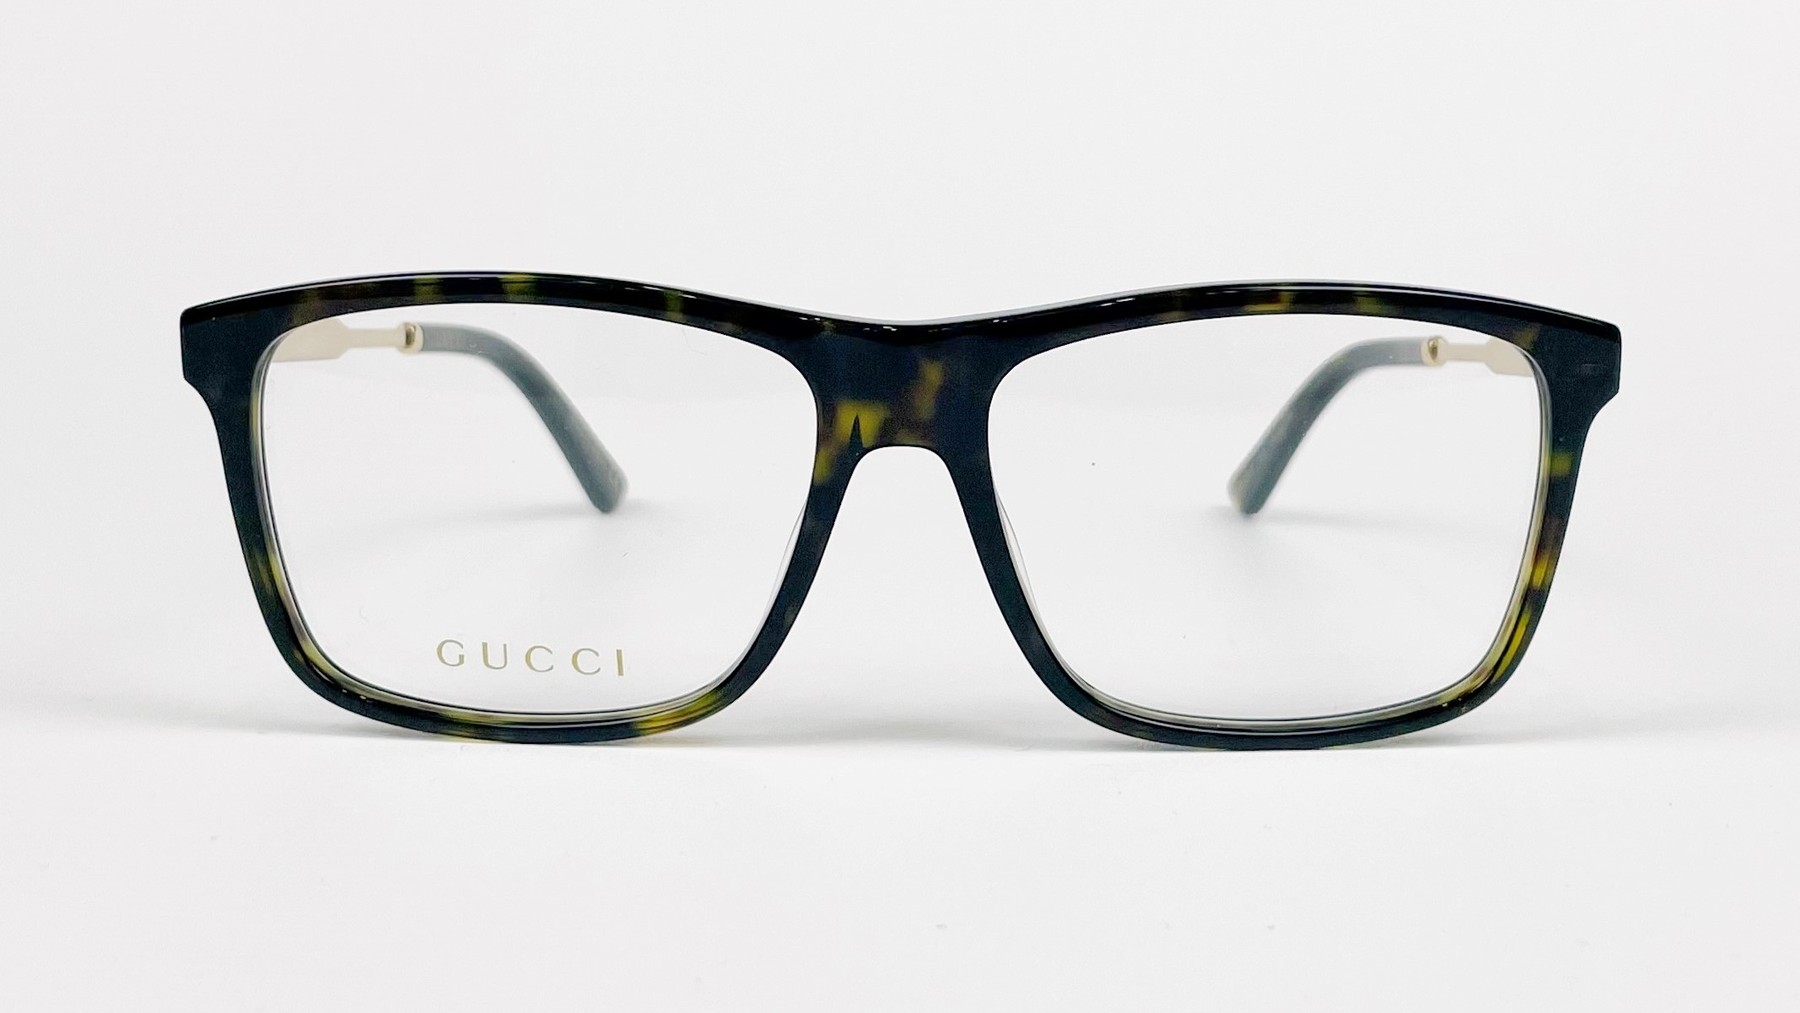 GUCCI GG0303O, Korean glasses, sunglasses, eyeglasses, glasses